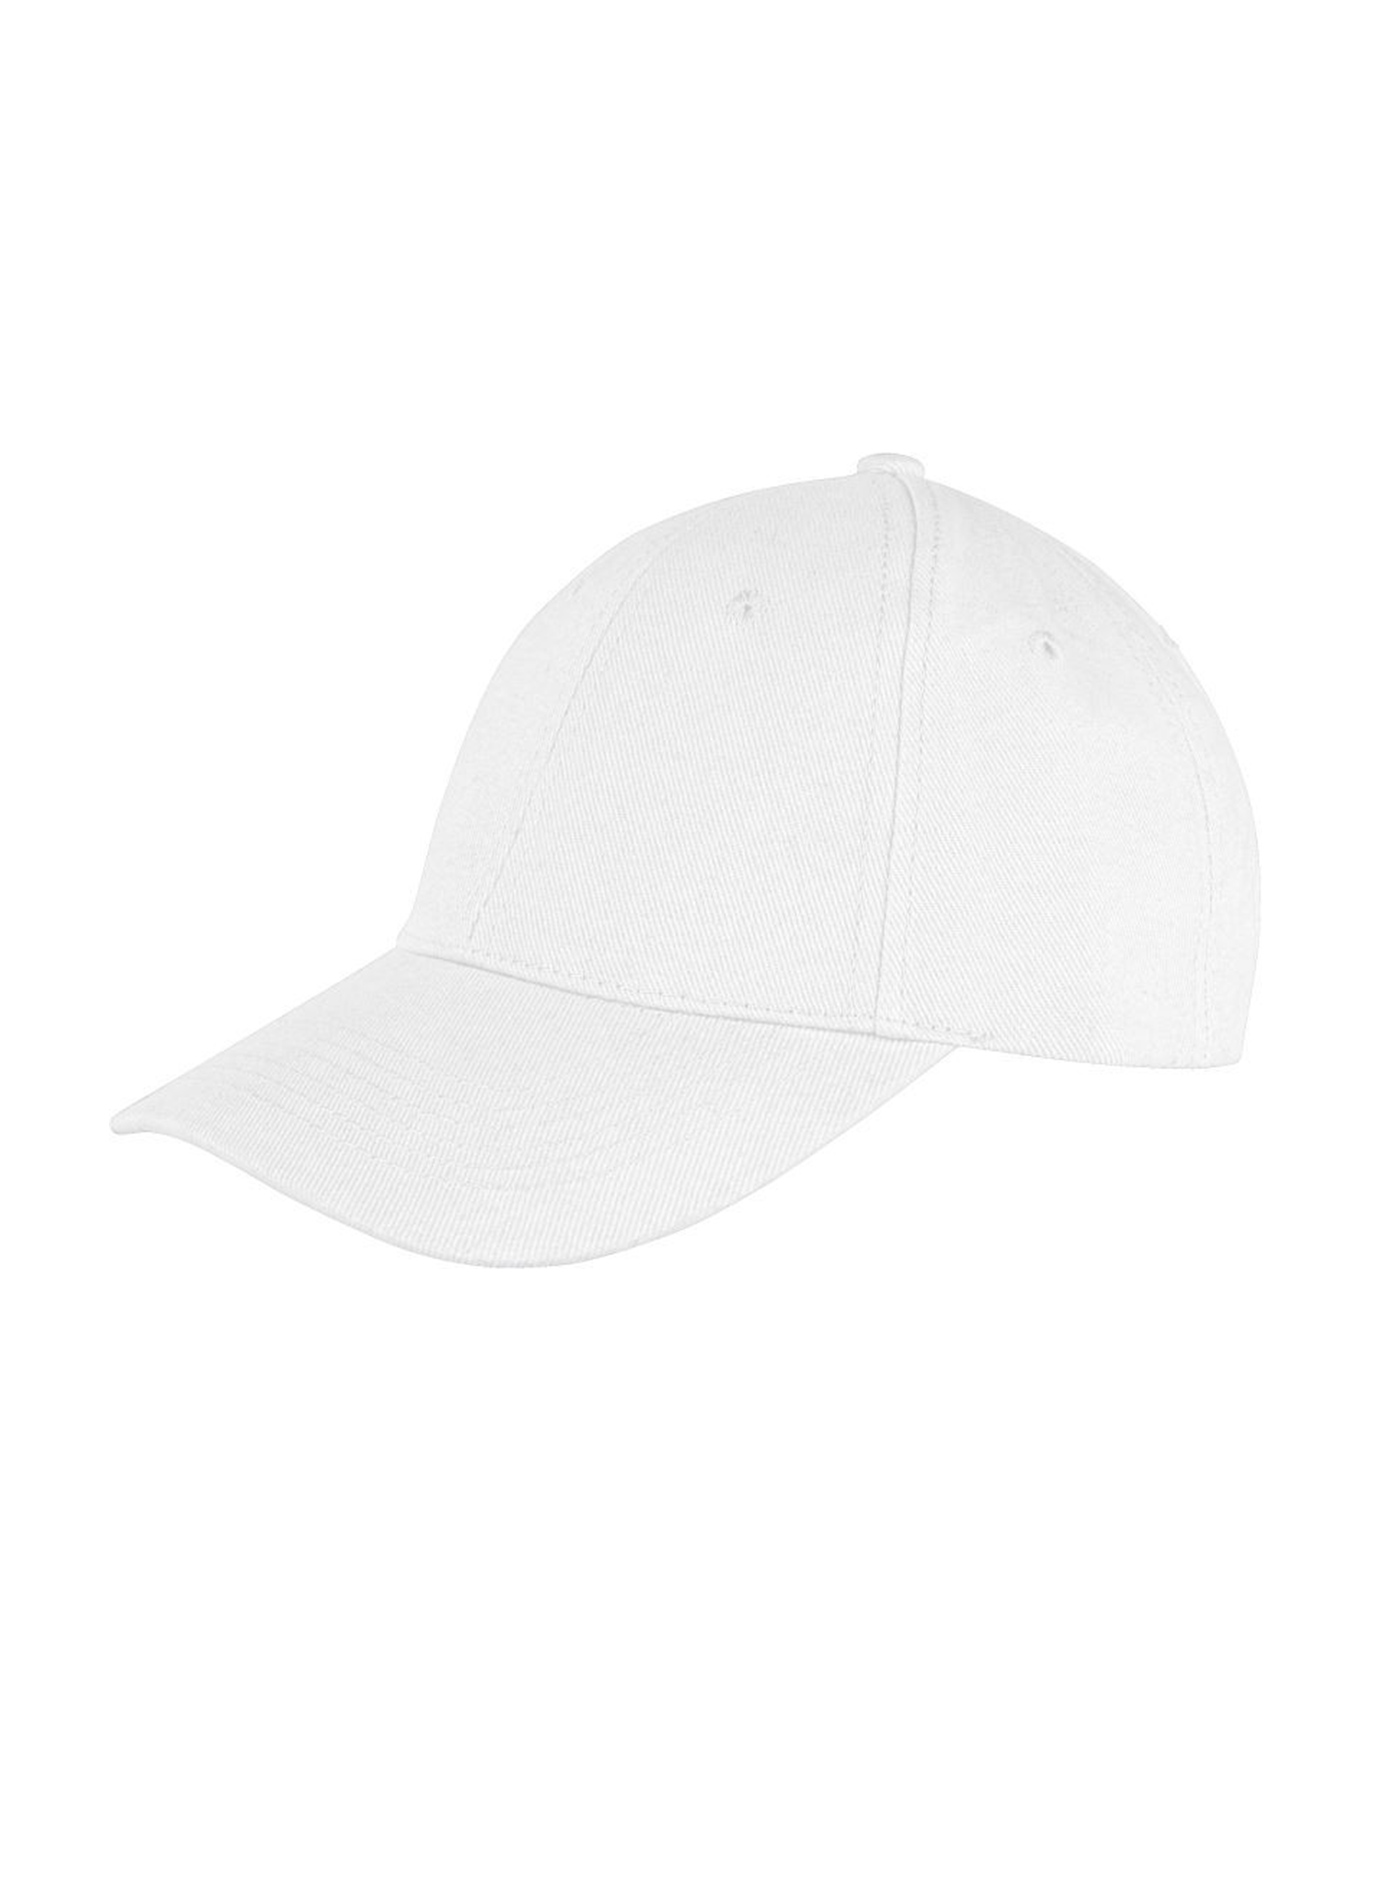 Kšiltovka Result headwear s nízkým profilem - Bílá univerzal